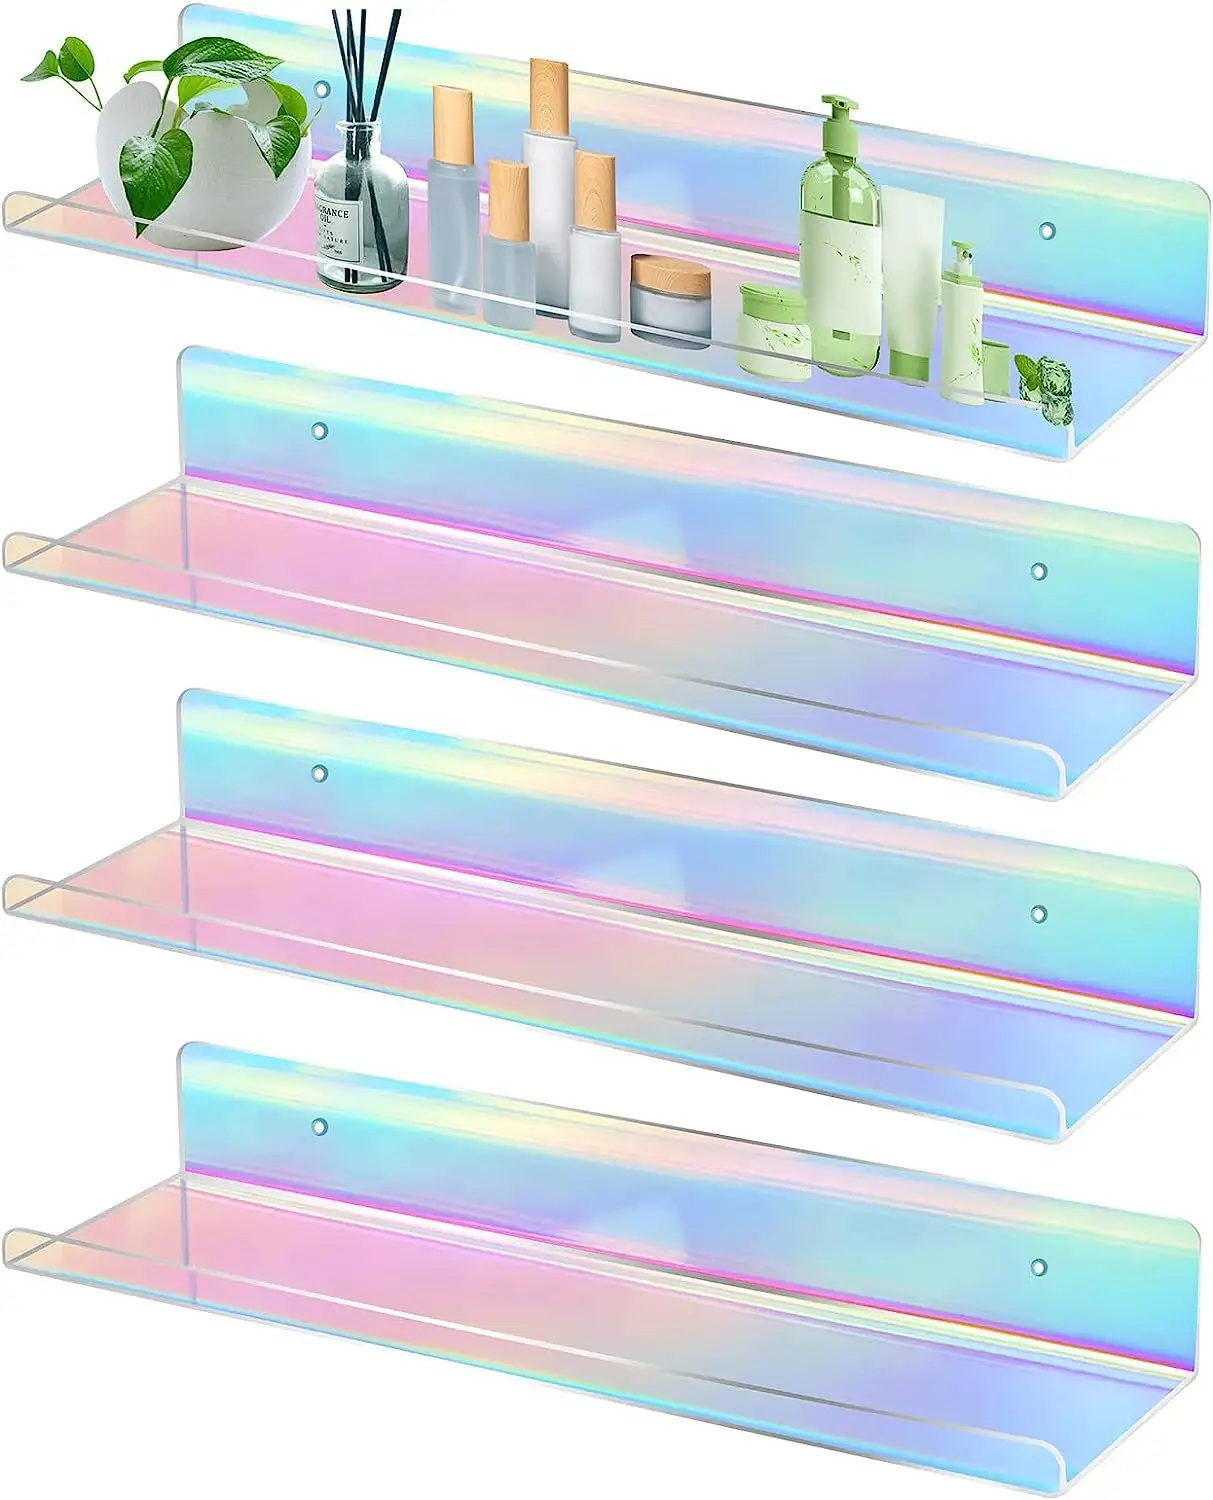 Expositor de prateleiras flutuantes de plástico acrílico com suporte de armazenamento iridescente de 15"